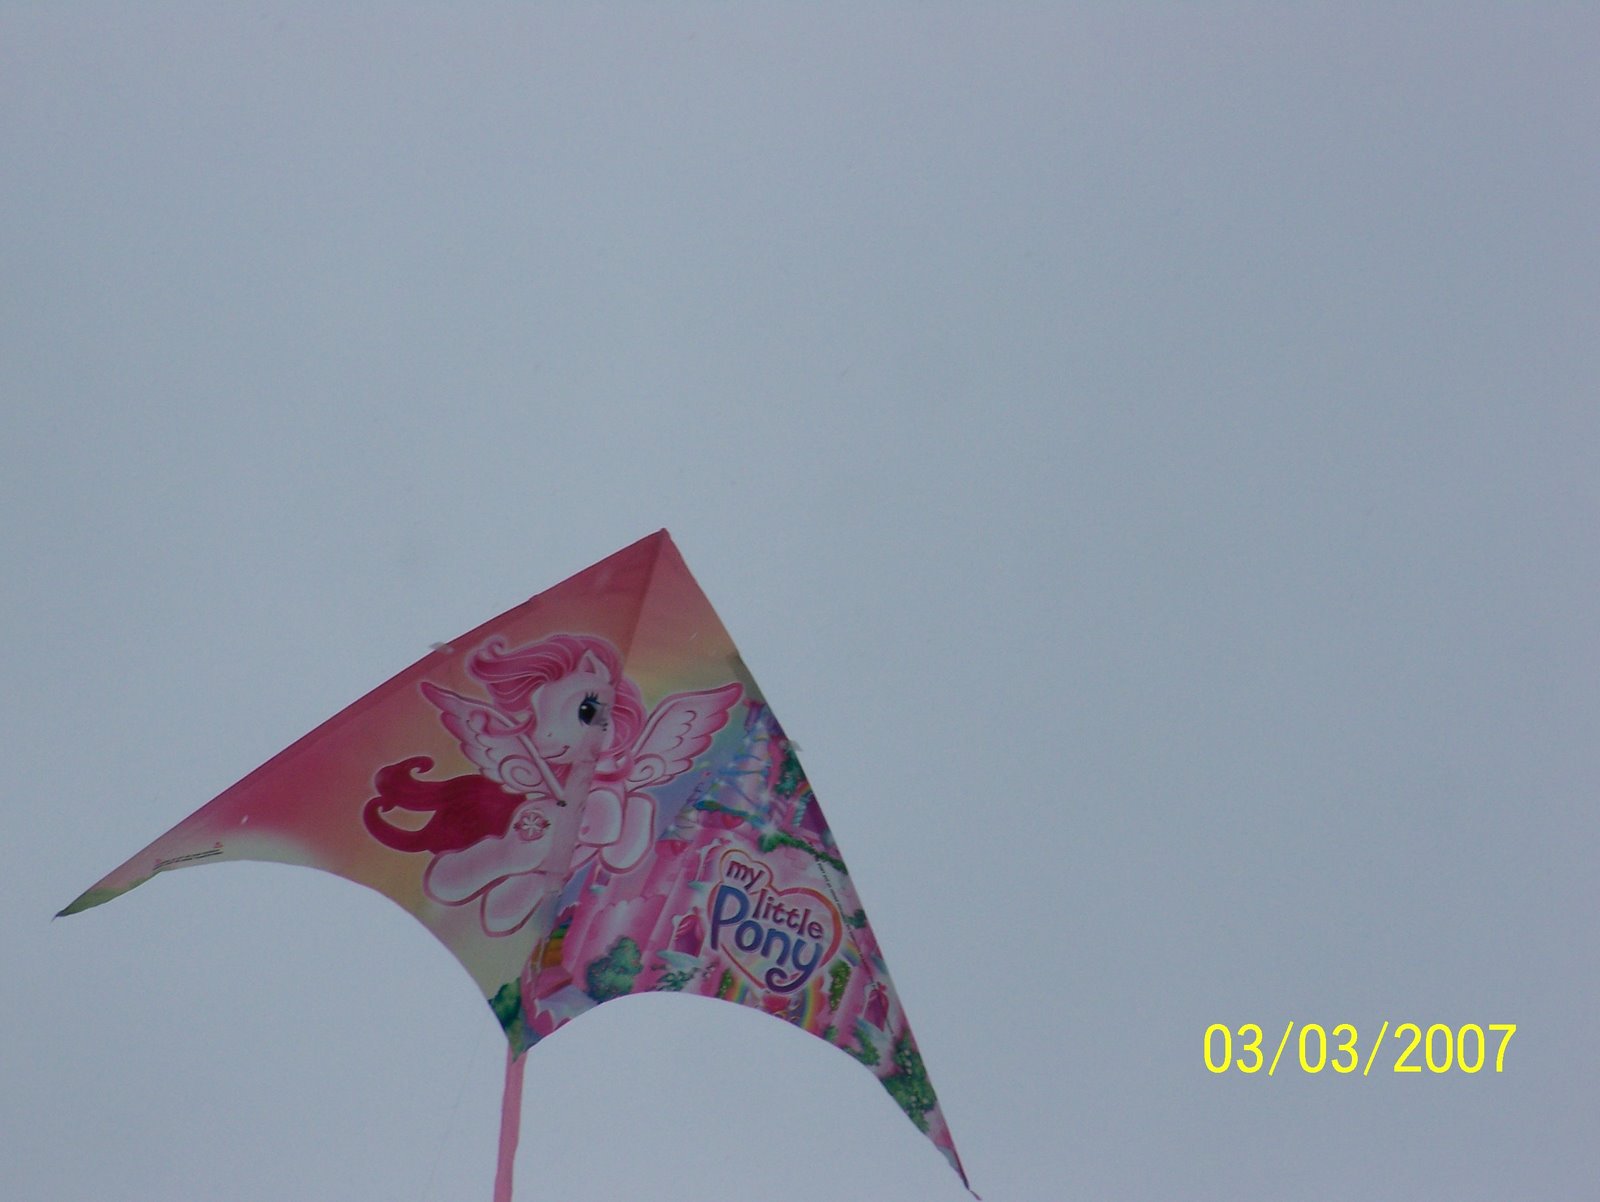 [Sledding+-+kite+flying+007.jpg]